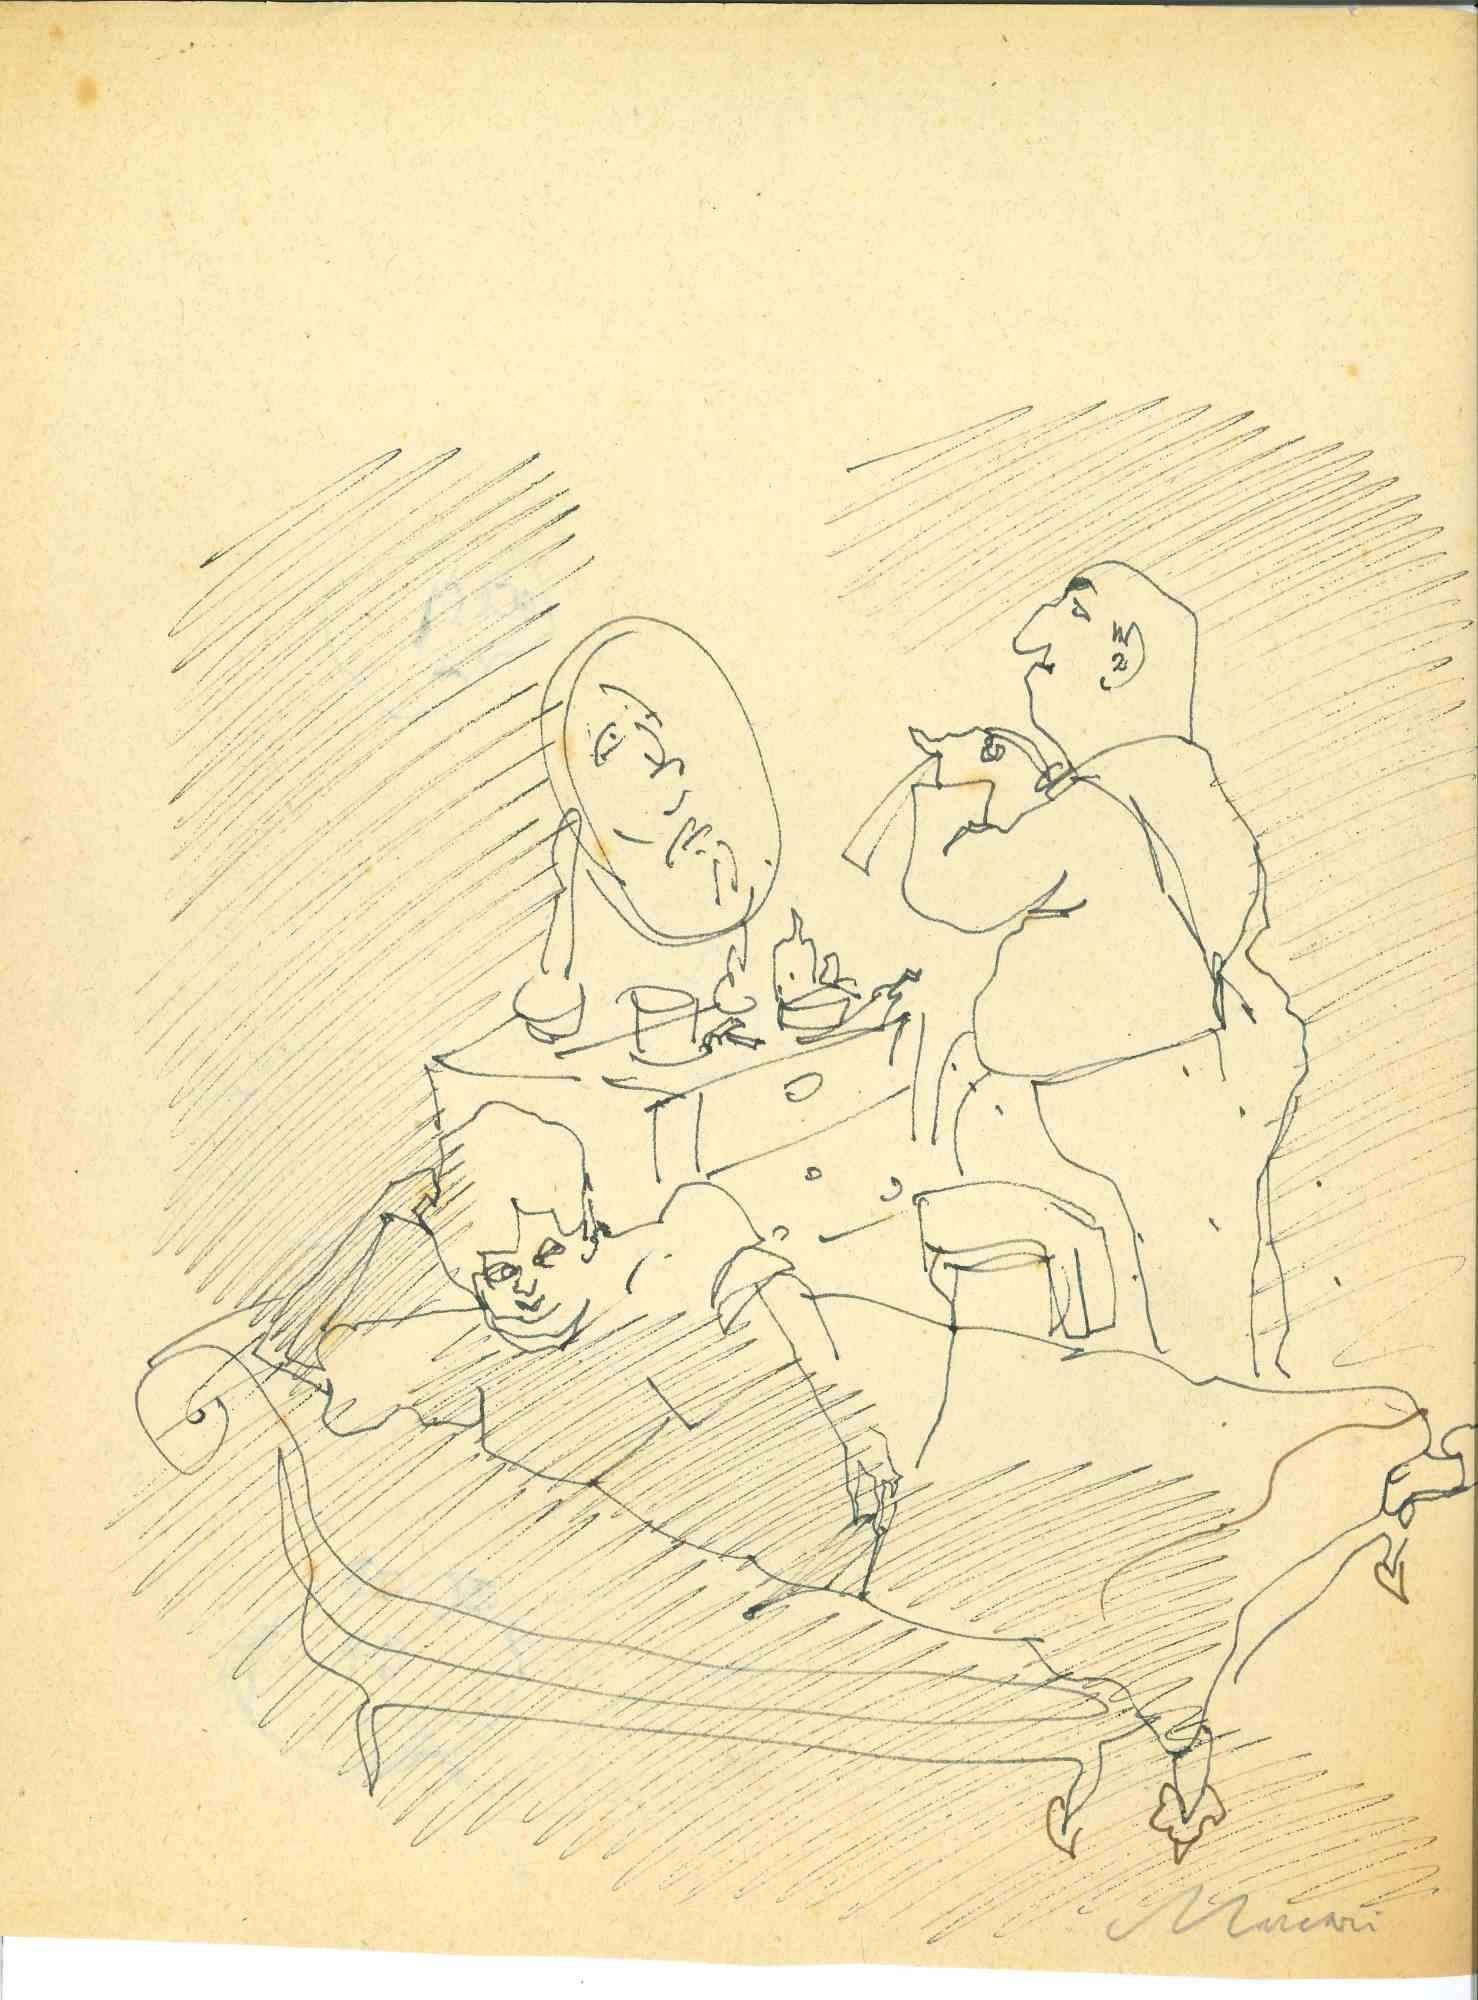 Dressing est un dessin à l'encre de Chine réalisé par Mino Maccari (1924-1989) au milieu du 20e siècle.

Signé à la main.

Bon état avec de légères rousseurs.

Mino Maccari (Sienne, 1924-Rome, 16 juin 1989) est un écrivain, peintre, graveur et